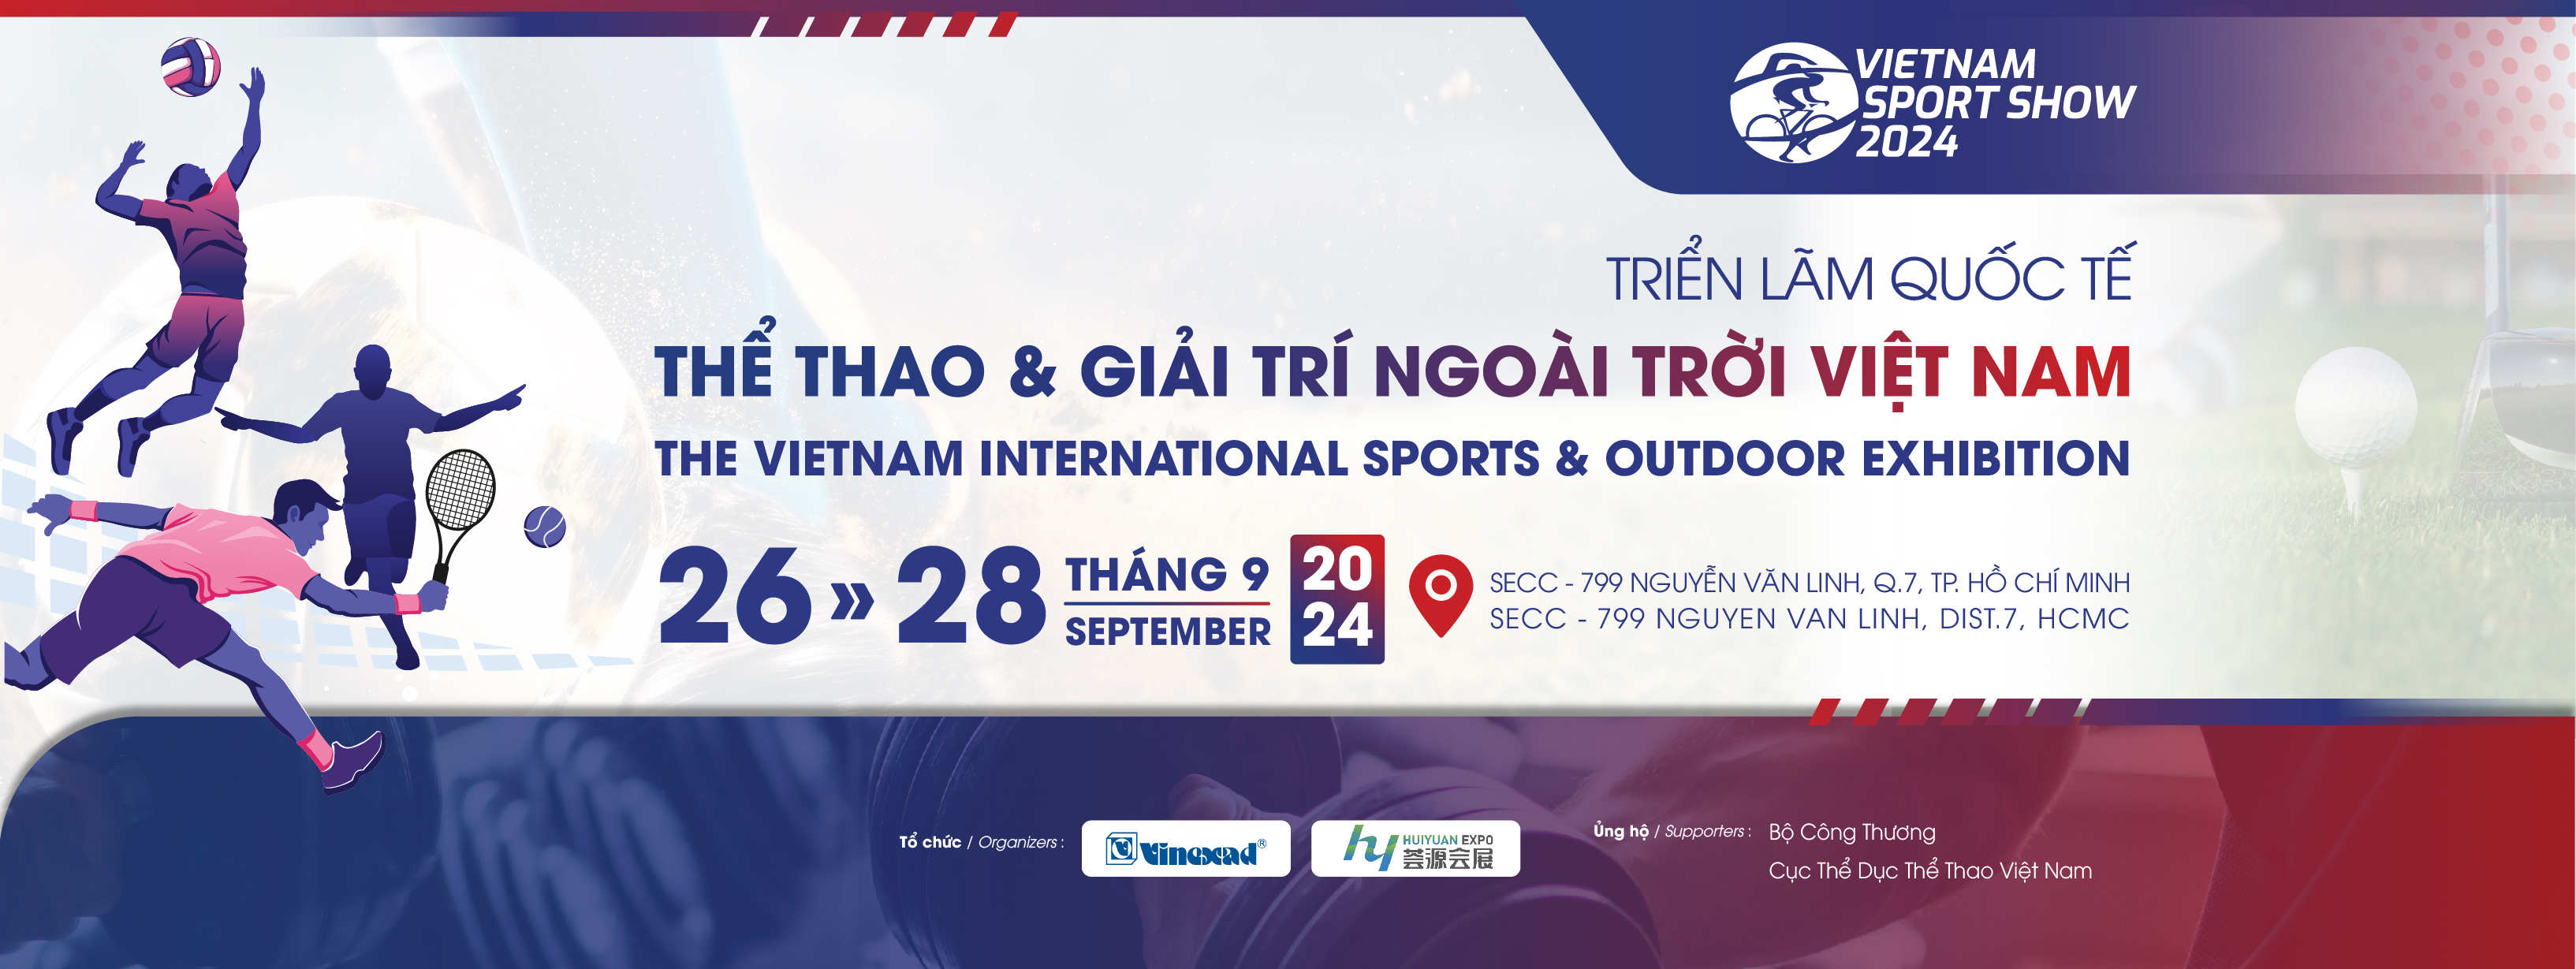 Triển lãm Vietnam Sport Show